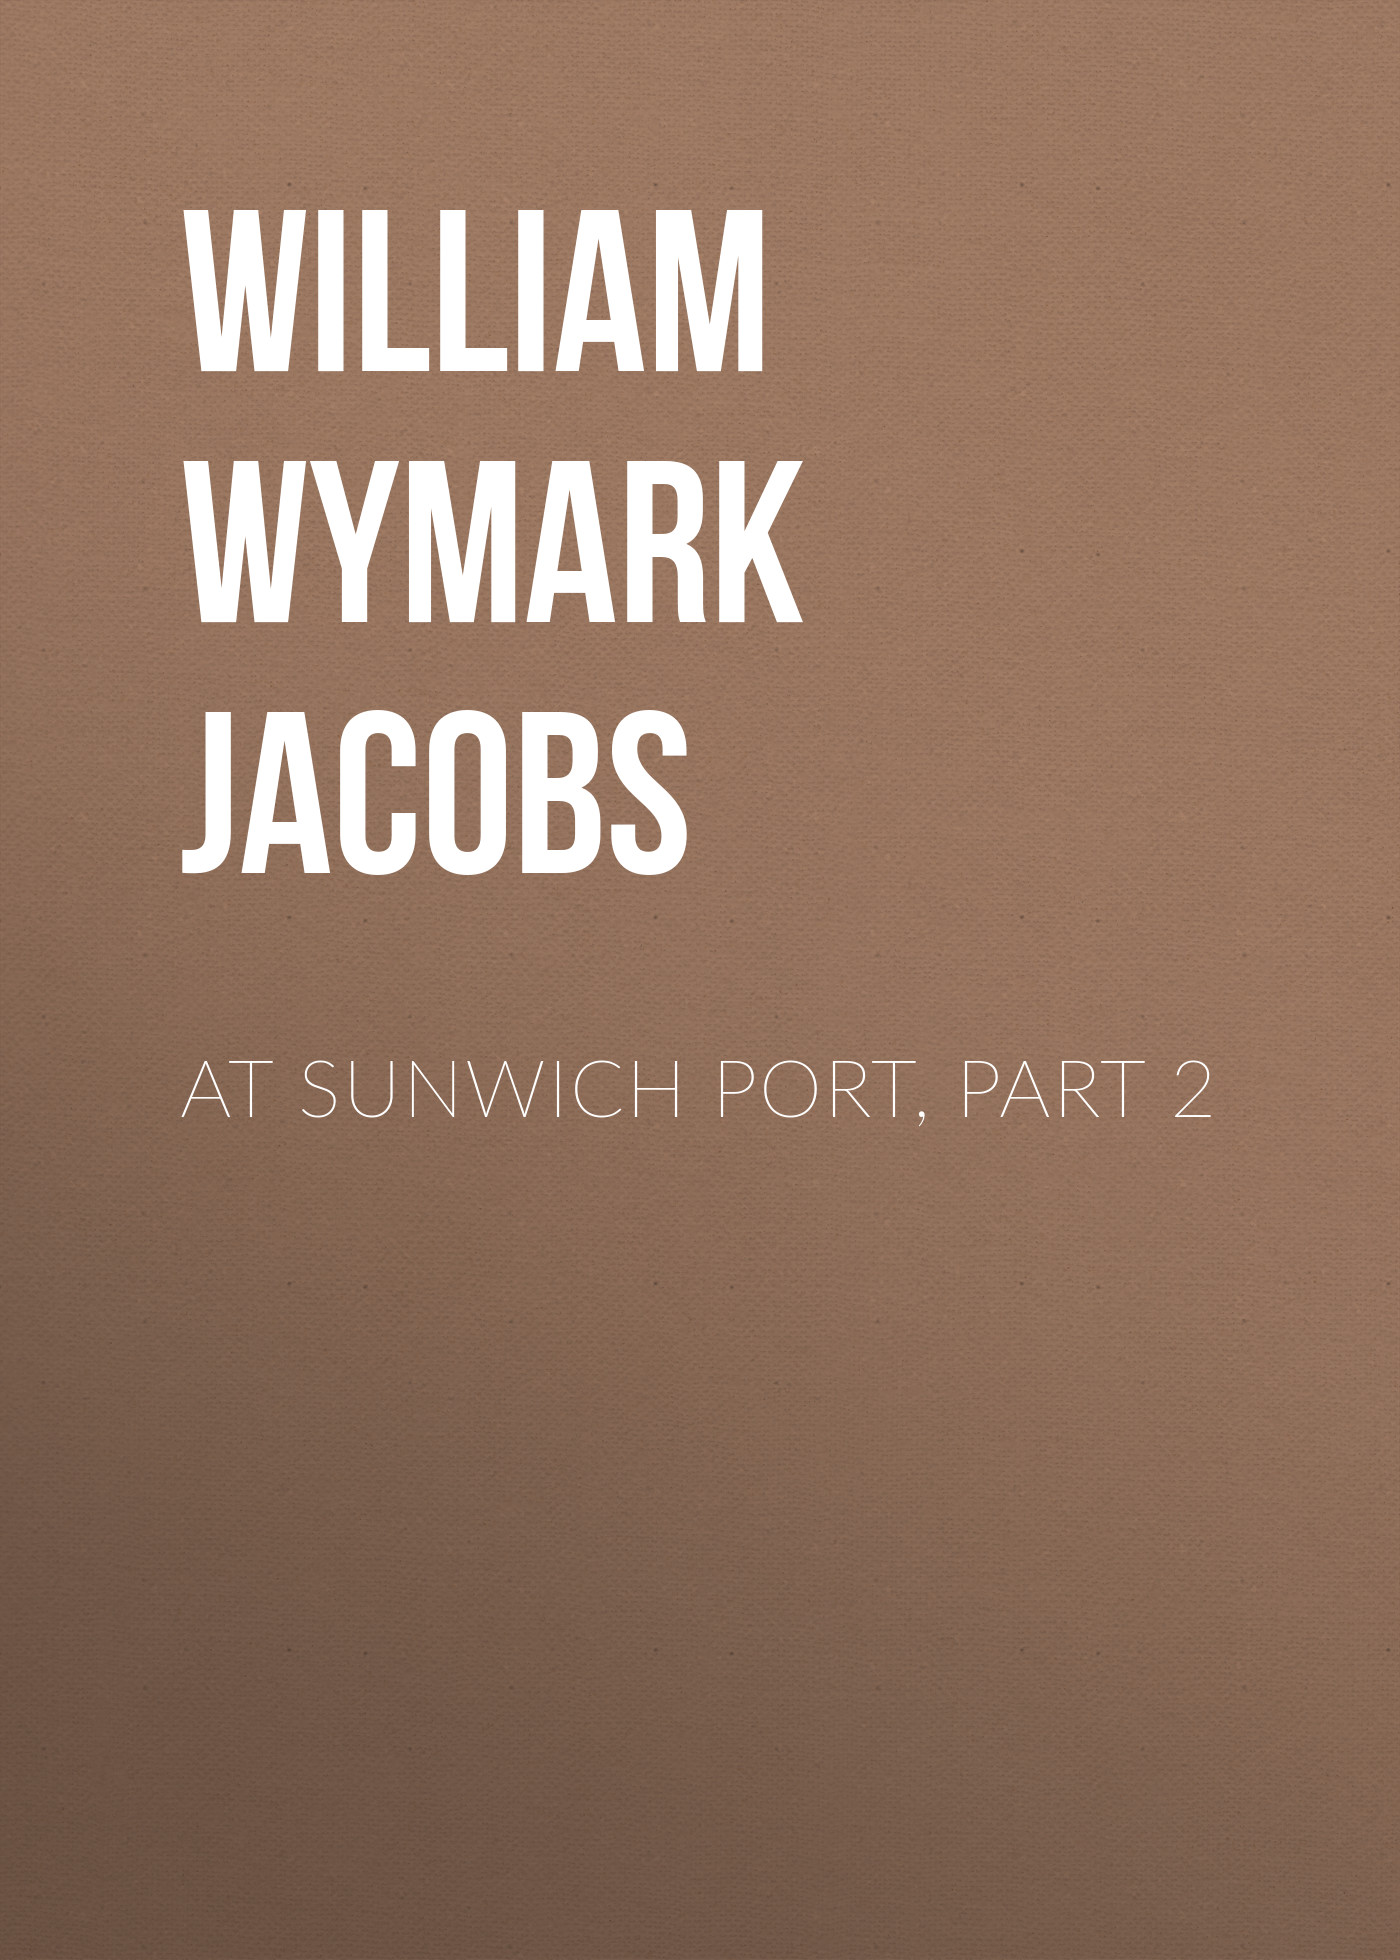 Книга At Sunwich Port, Part 2 из серии , созданная William Wymark Jacobs, может относится к жанру Зарубежная классика, Зарубежная старинная литература. Стоимость электронной книги At Sunwich Port, Part 2 с идентификатором 34843886 составляет 0 руб.